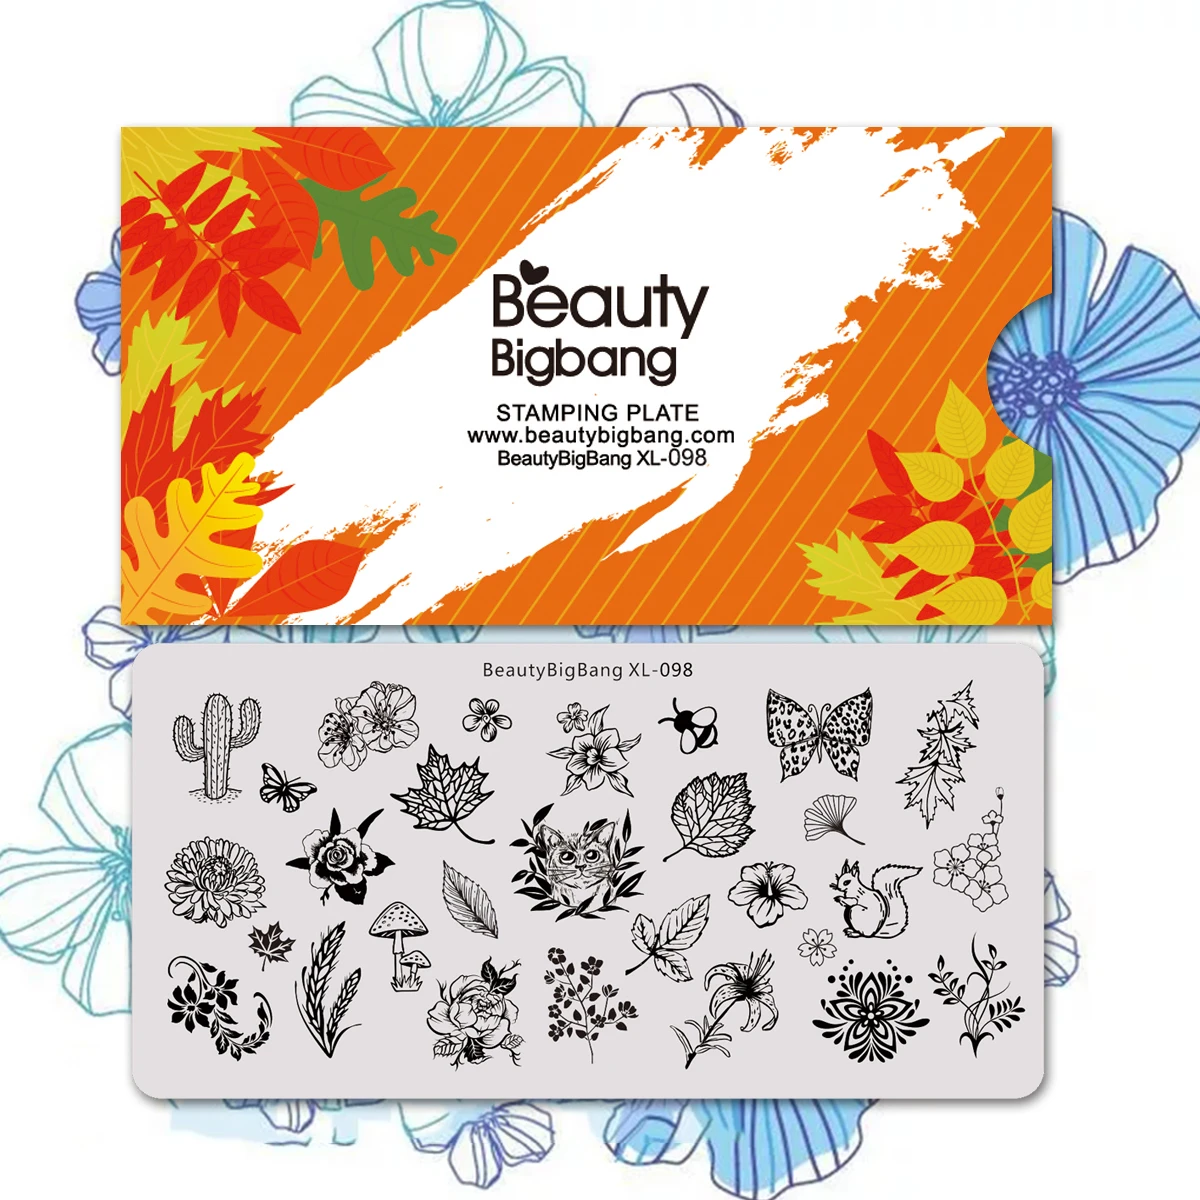 Пластины для стемпинга ногтей Beautybigbang шаблоны дизайна в виде кошек бабочек